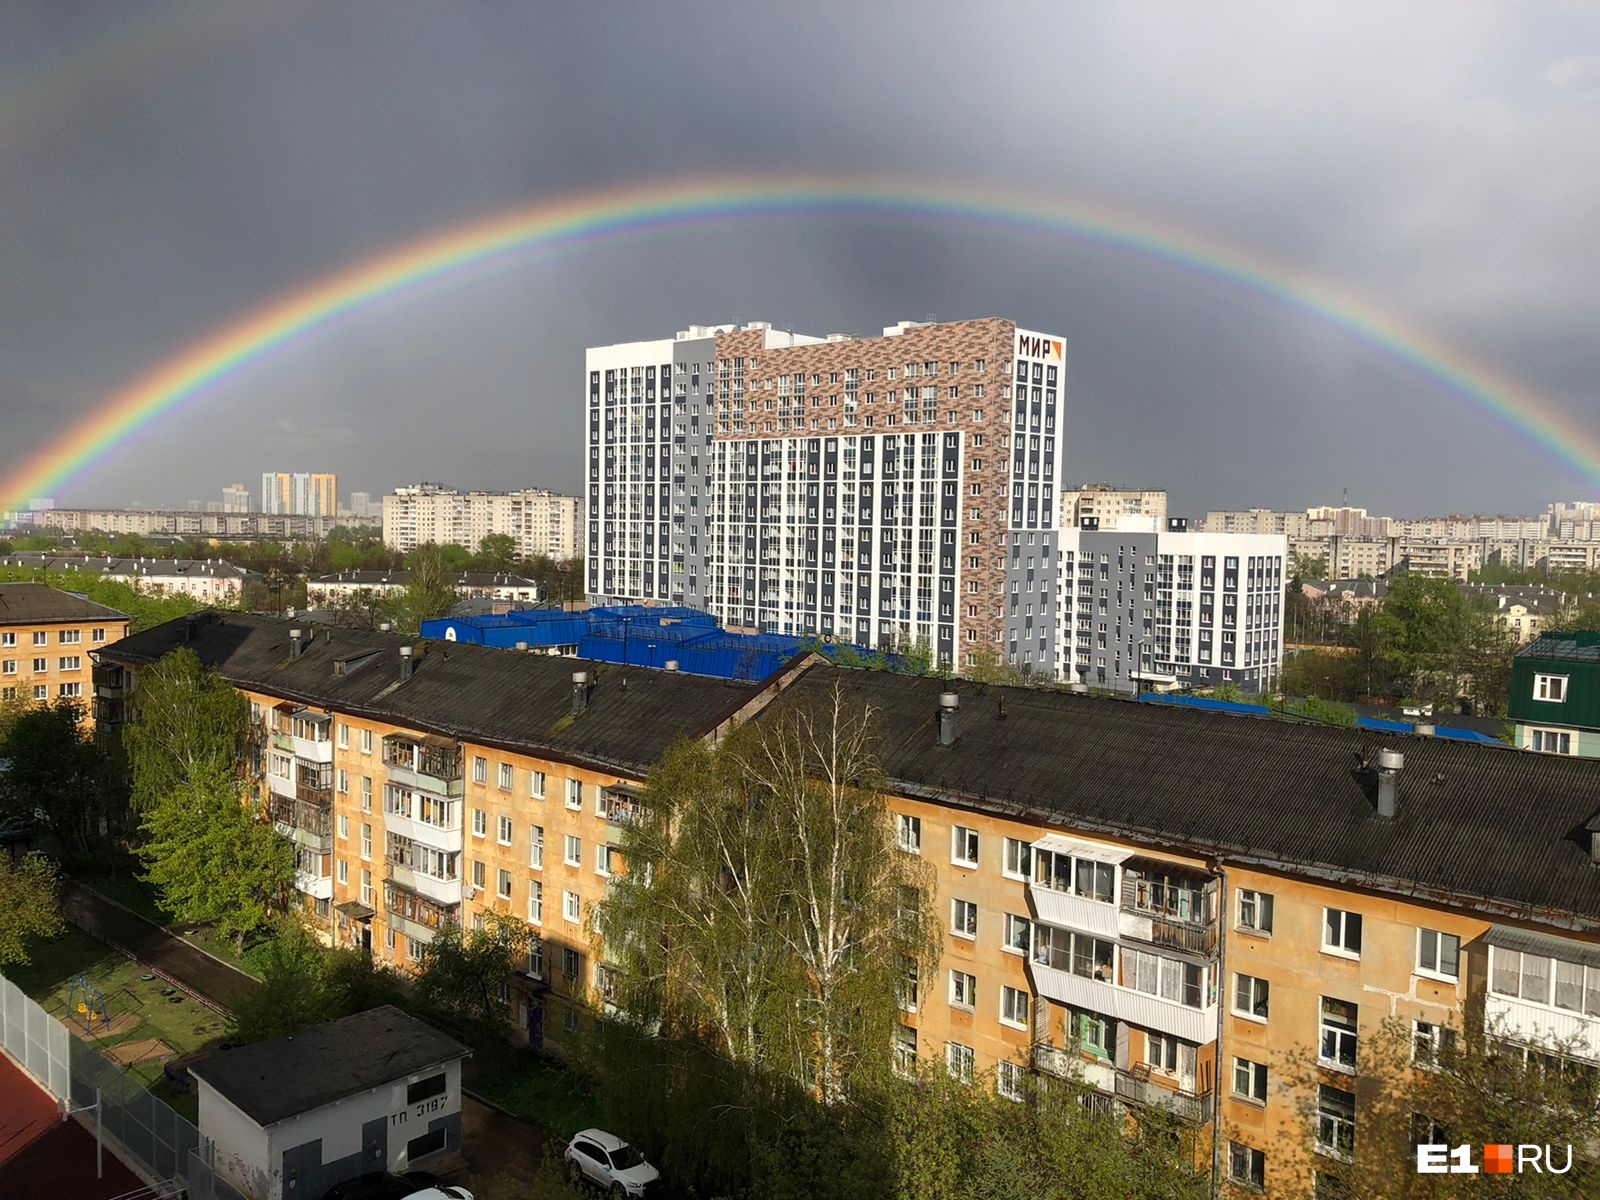 У кого ярче? 15 живописных фото радуги под тучами Екатеринбурга